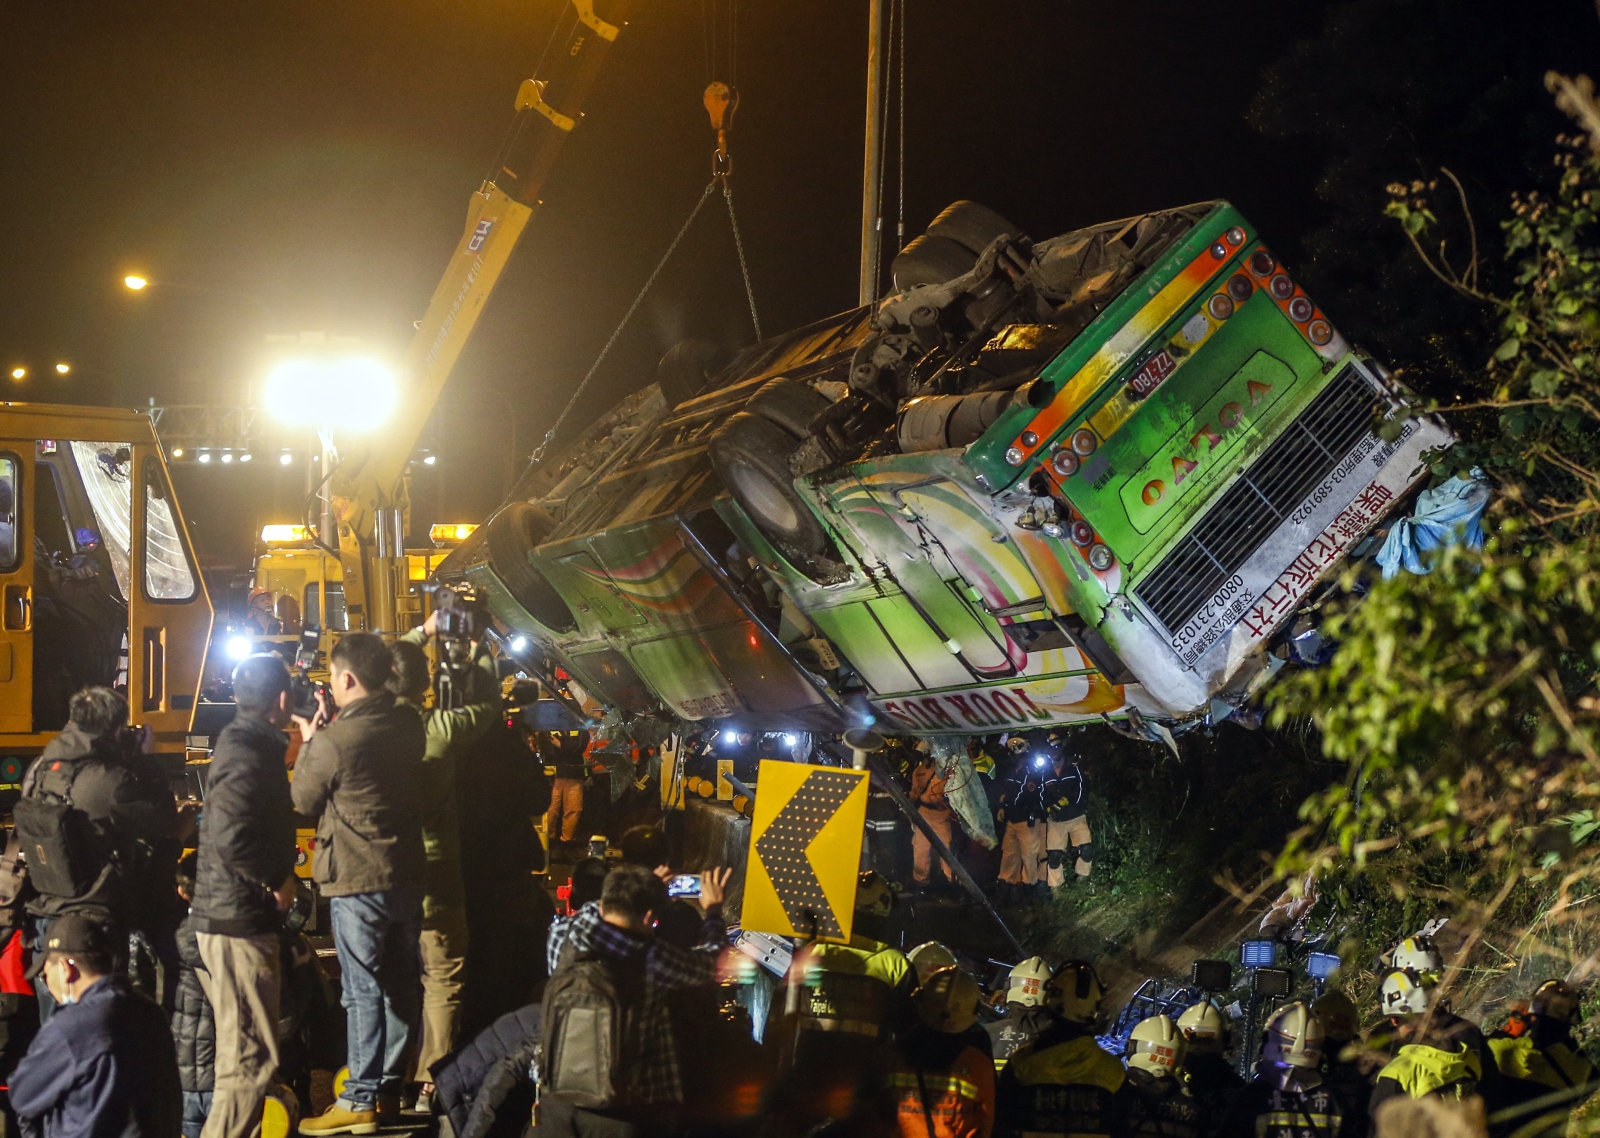 Wypadek autobusu na trasie do Tajpej. W jego wyniku śmierć poniosły co najmniej 32 osoby.